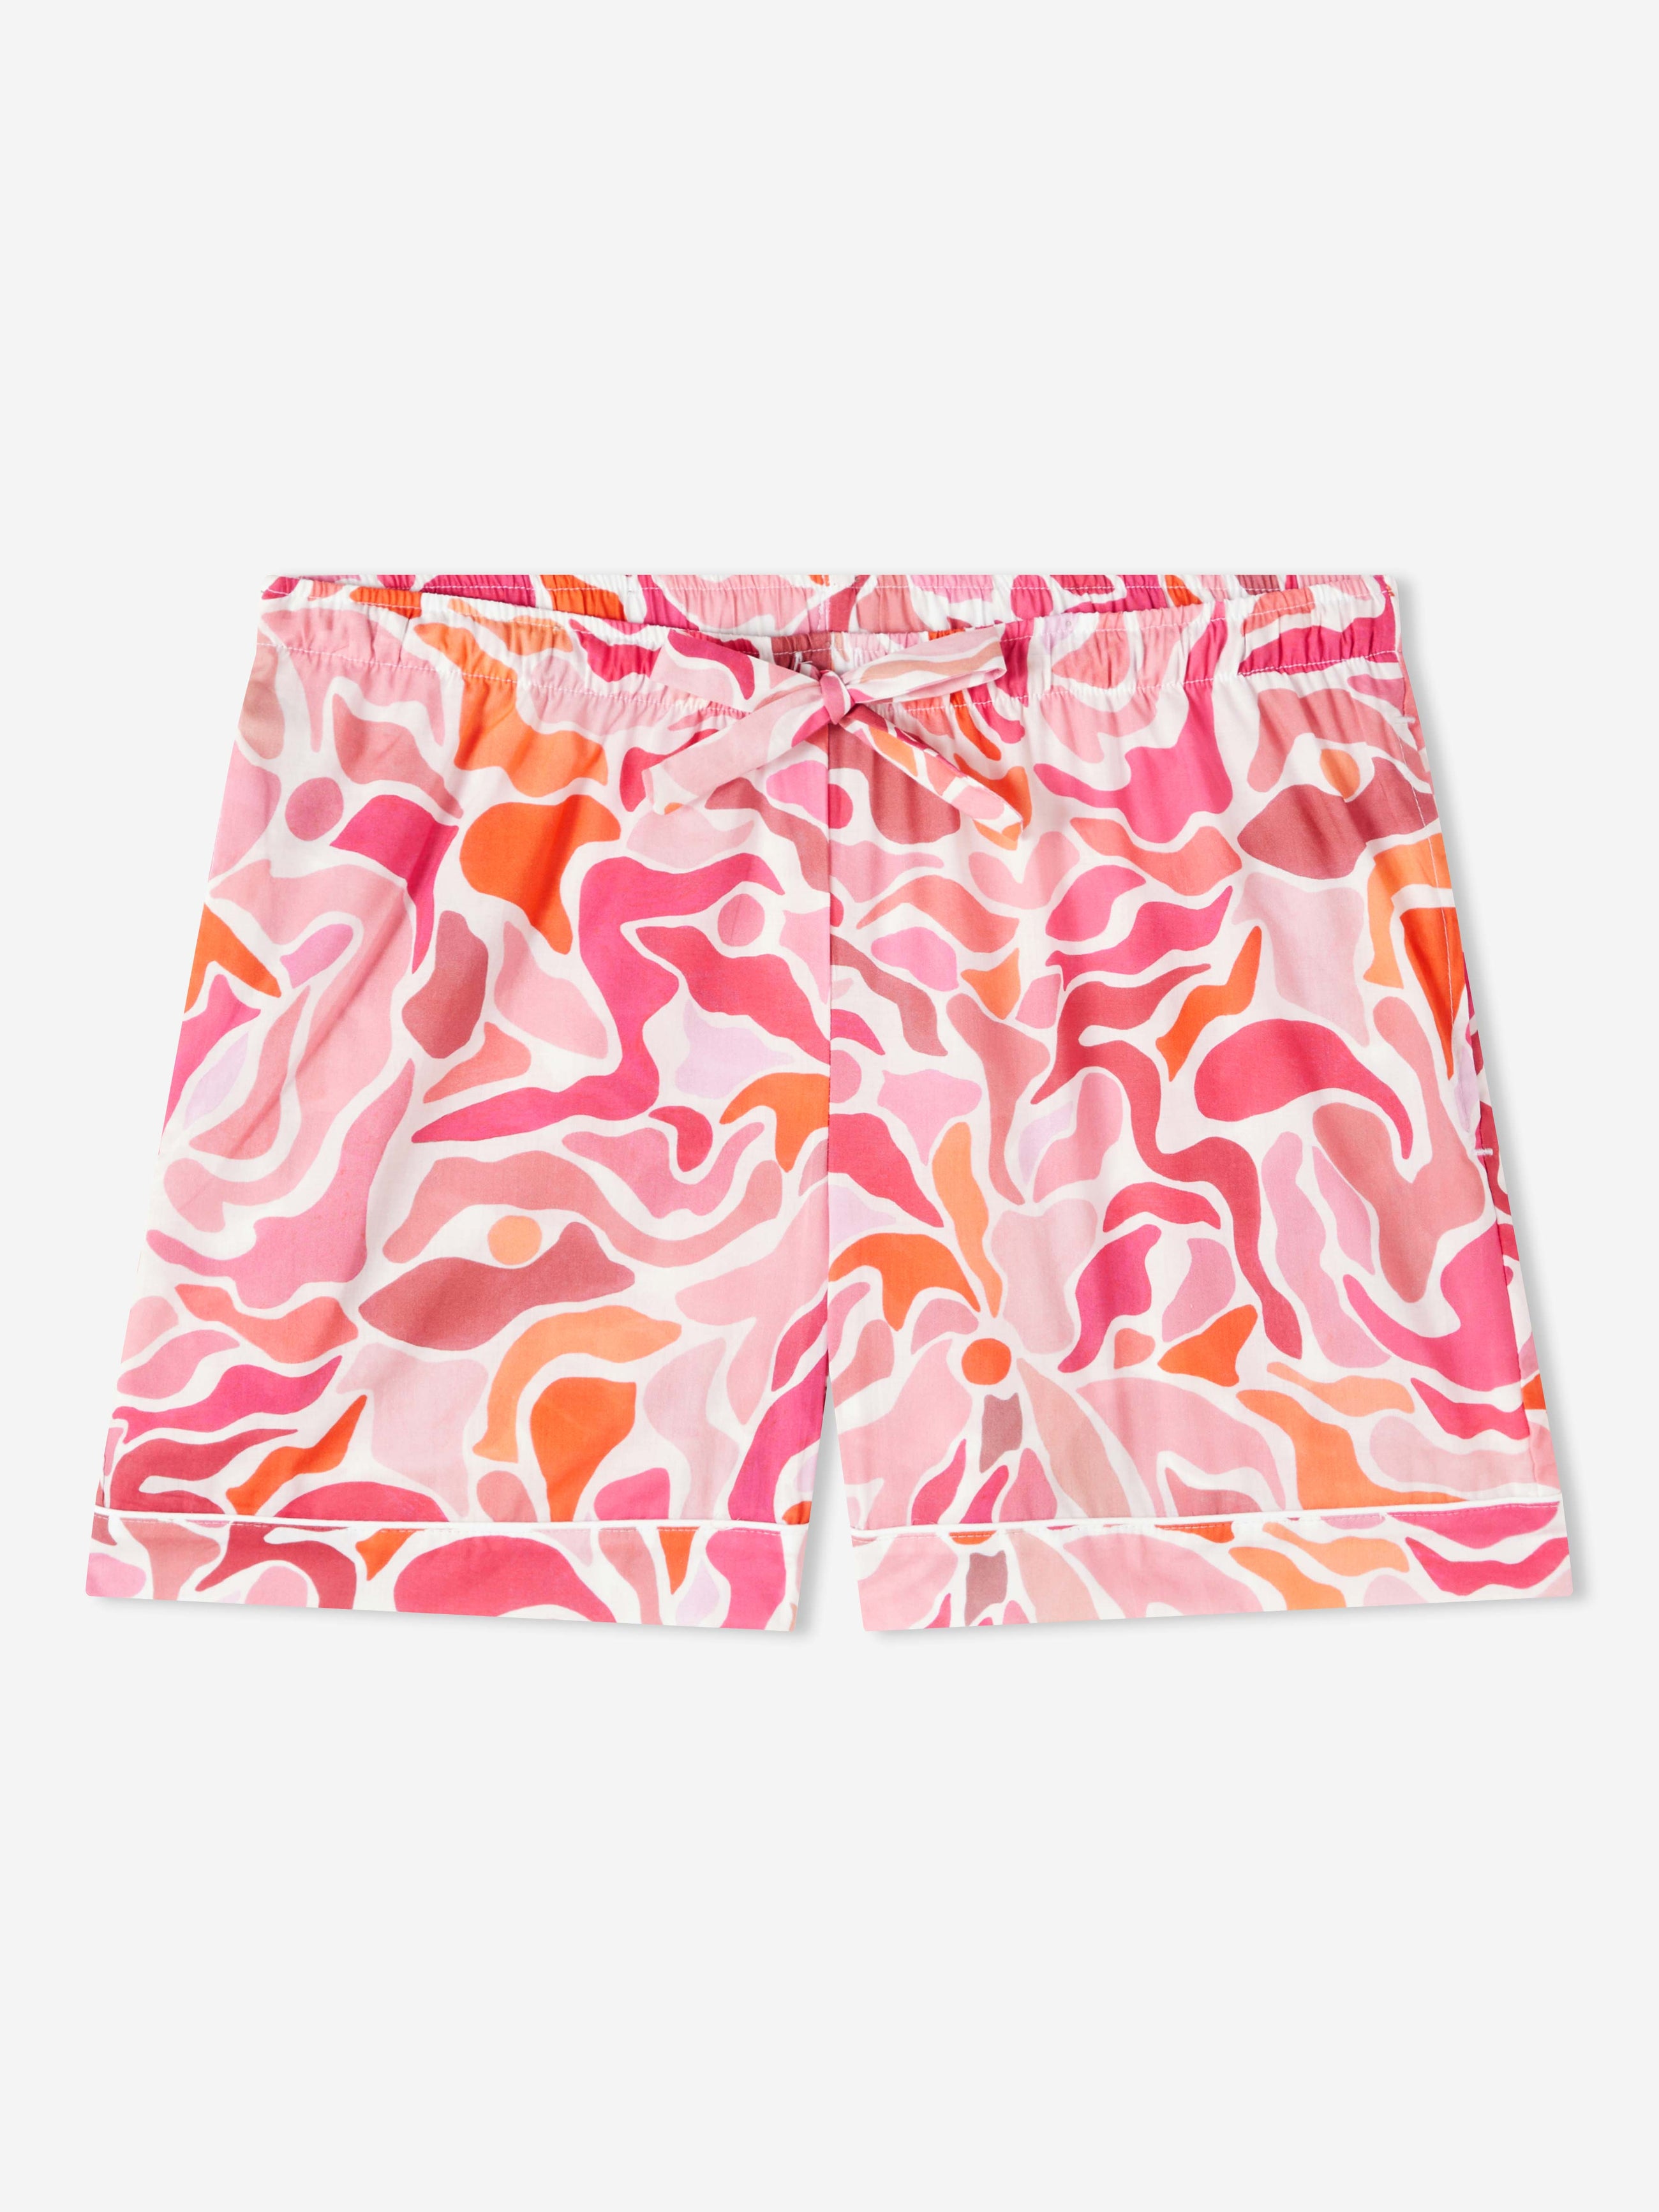 Women's Lounge Shorts Ledbury 61 Cotton Batiste Pink